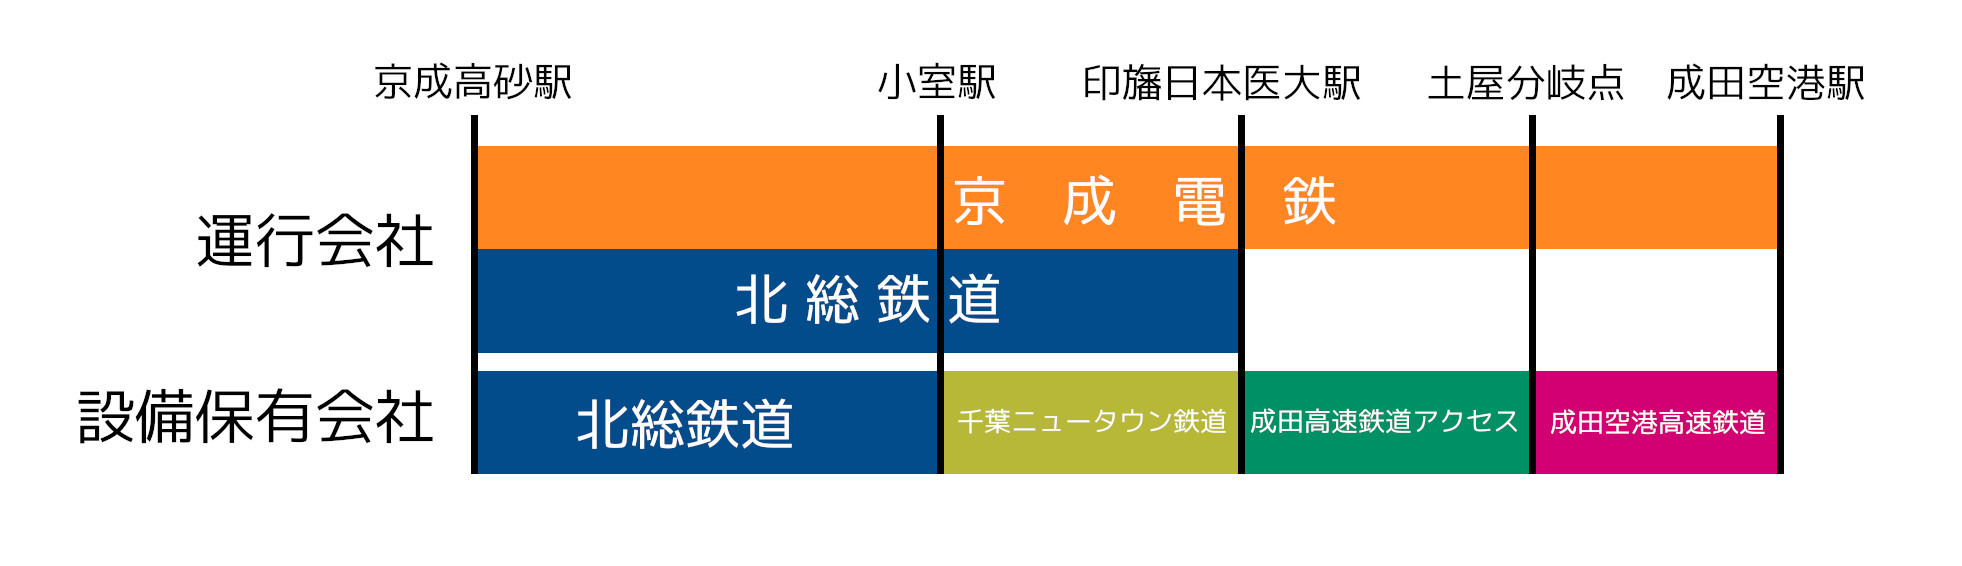 成田スカイアクセス線区間の運行会社と設備保有会社